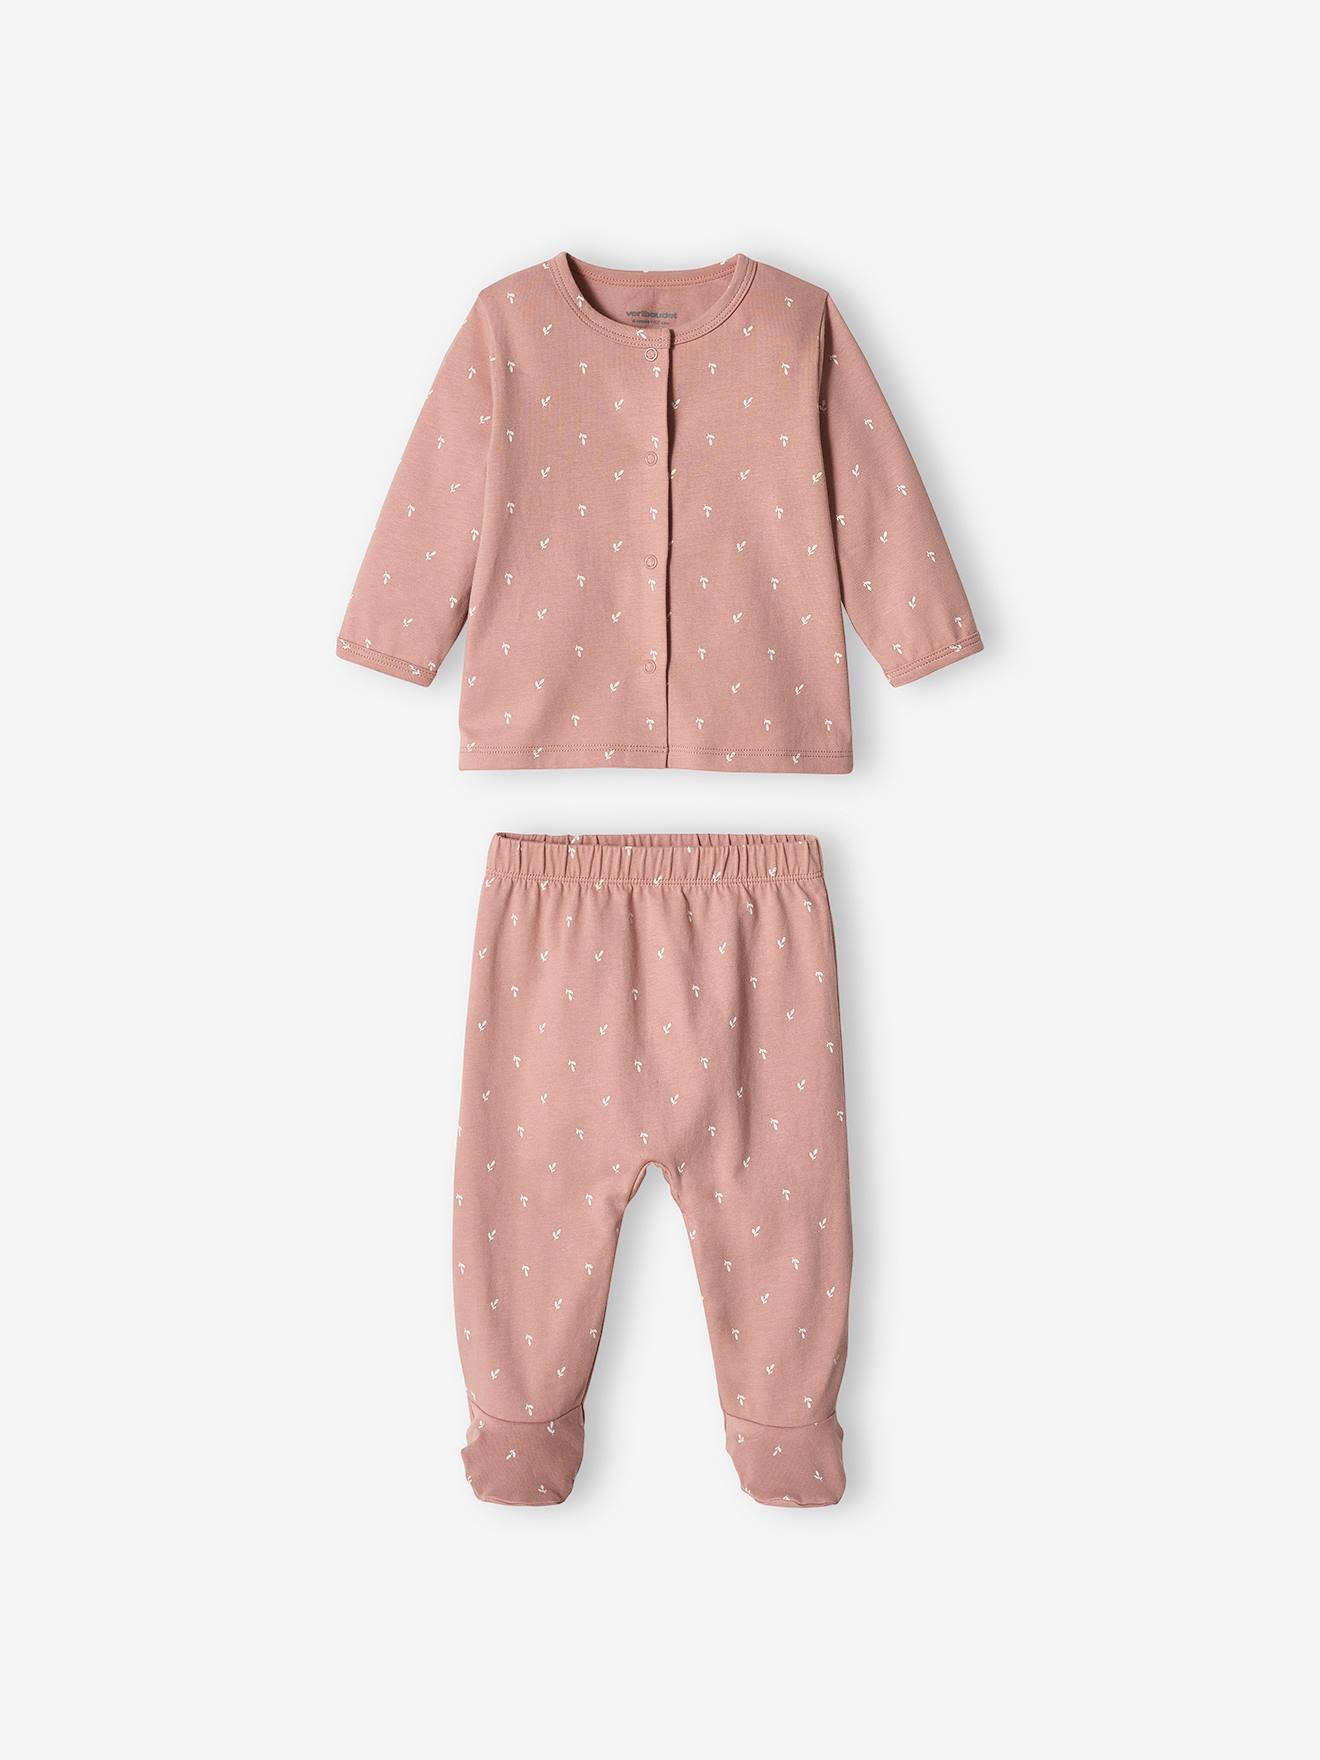 2 en 1 Pijama/Manta Baby Boum Lila